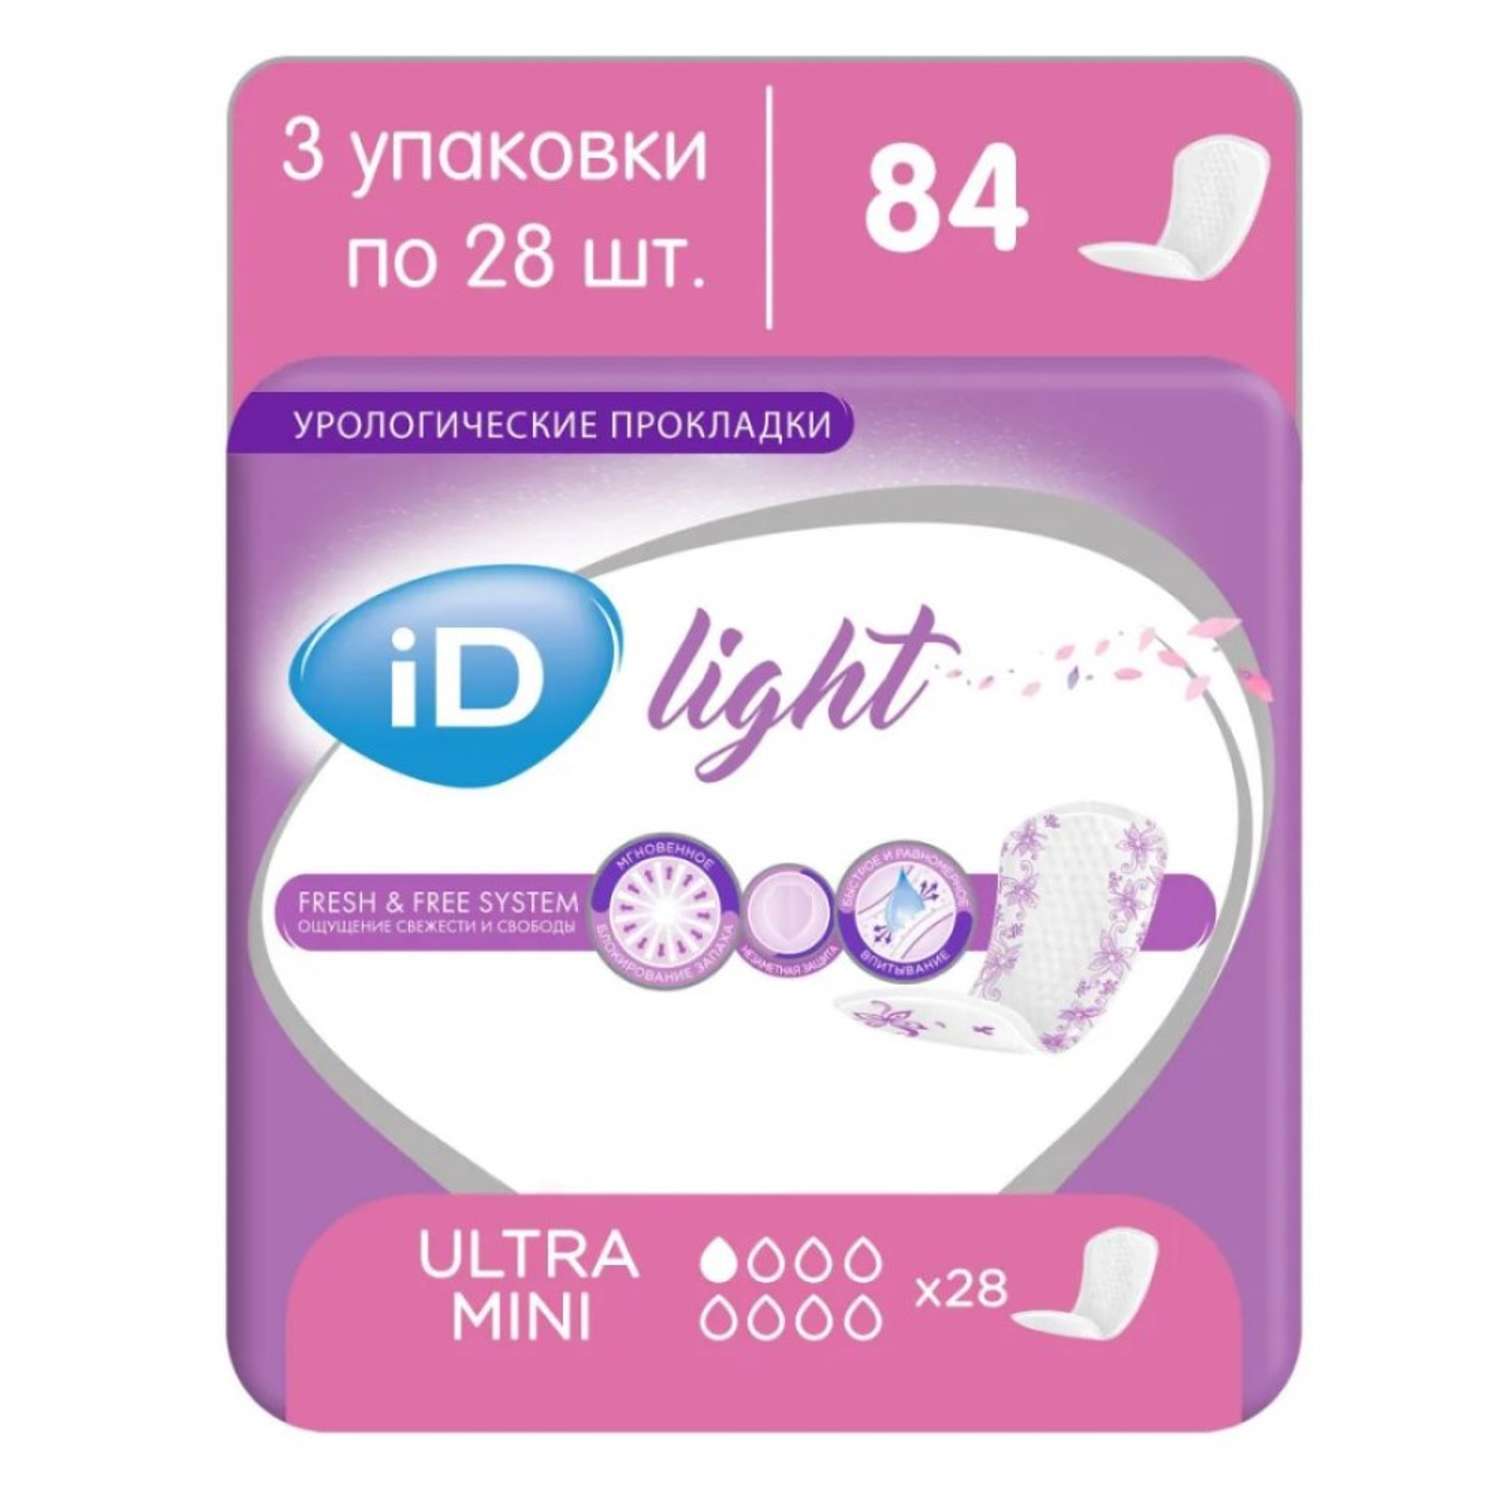 Прокладки урологические iD LIGHT Ultra mini 3 упаковки по 28 шт - фото 1